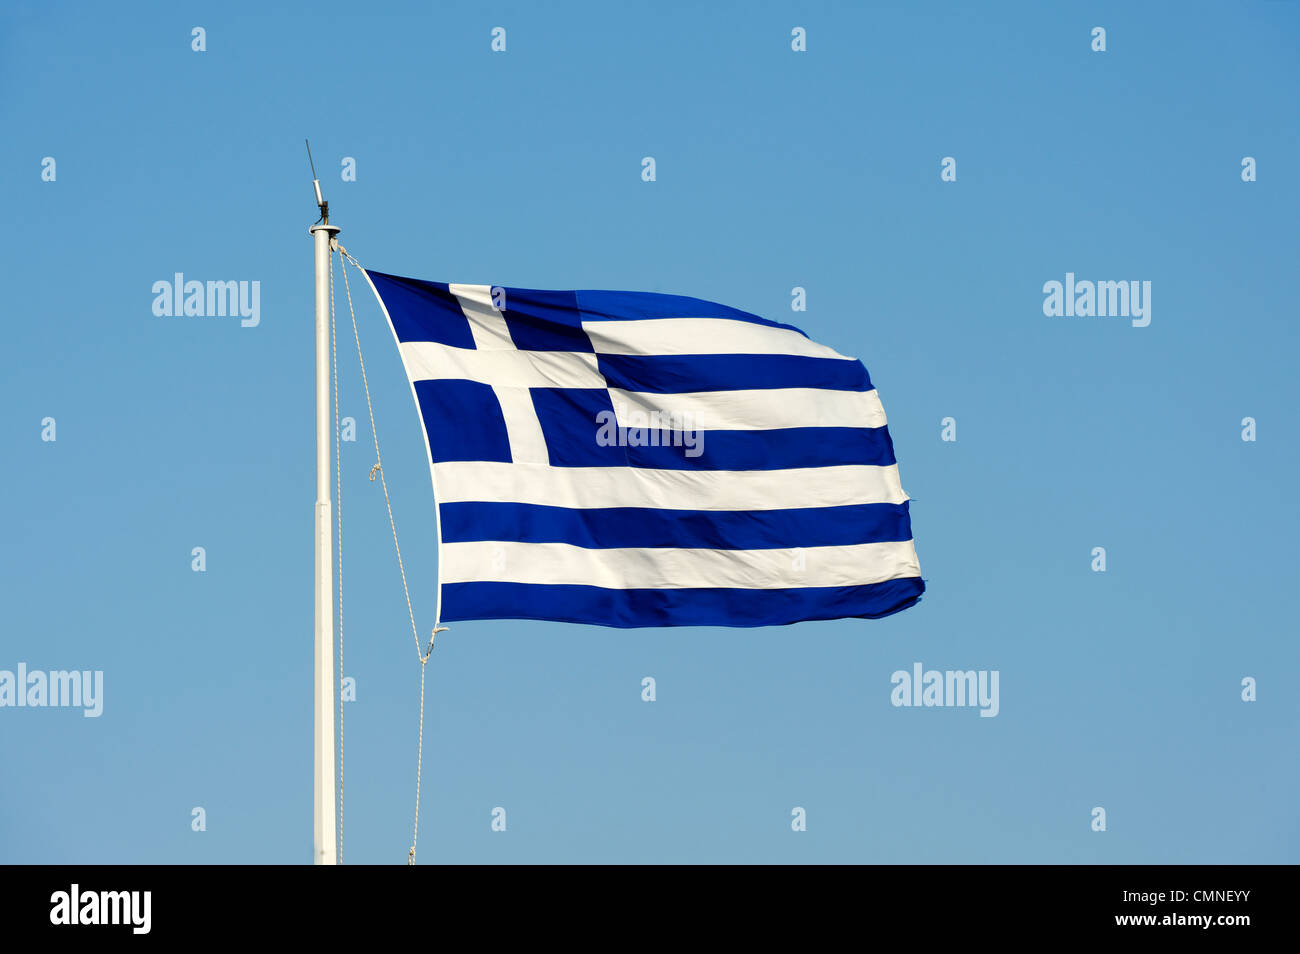 Athènes. La Grèce. Vue sur le drapeau national de la Grèce voler haut et fièrement sur un mât contre un ciel bleu en toile de fond. Banque D'Images